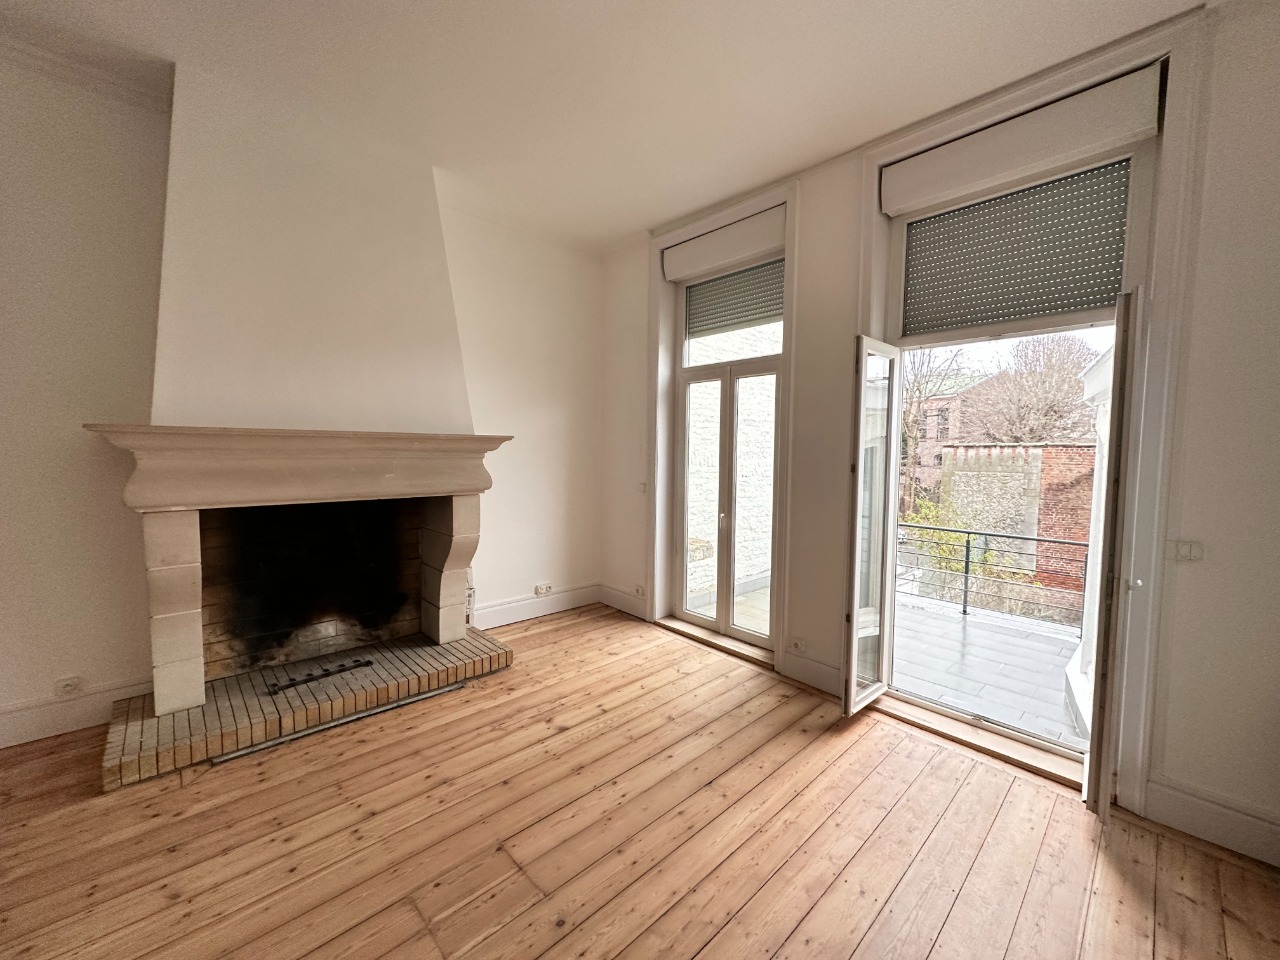 Vente appartement 59000 Lille - Lille Vauban - T2 rénové avec terrasse 